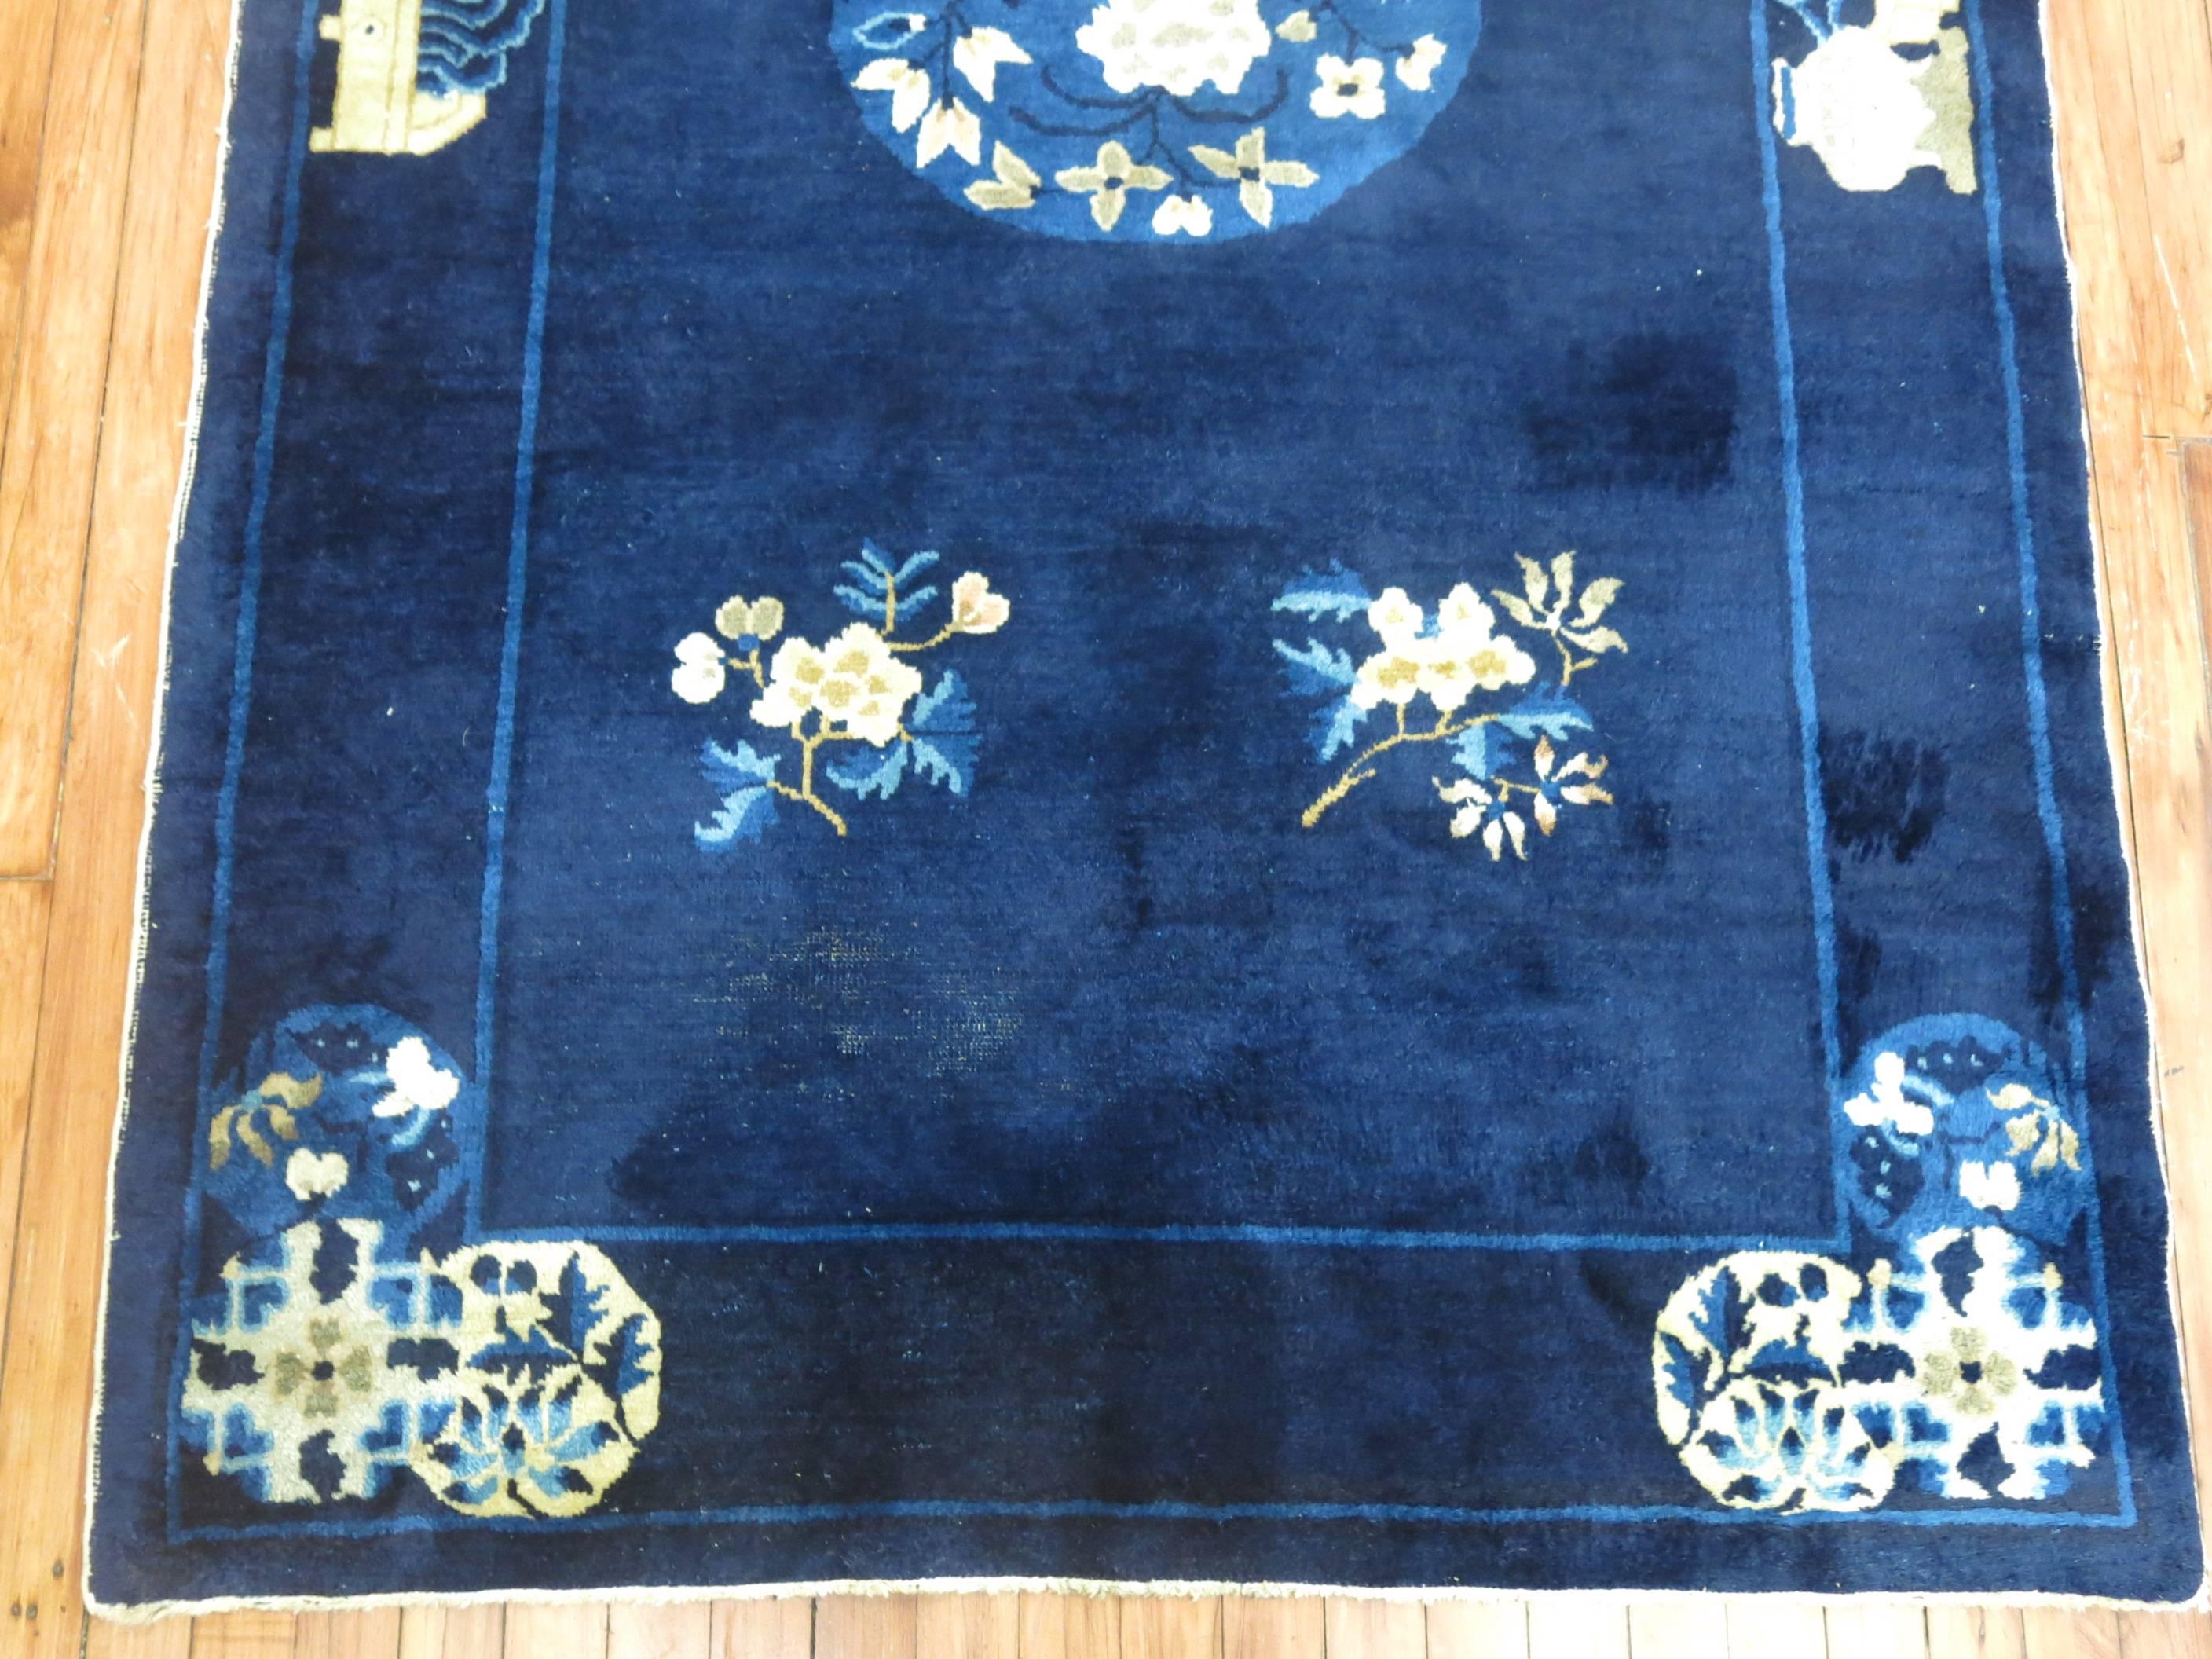 Superbe tapis chinois de Pékin, datant d'environ 1920, aux accents bleu profond et ivoire et à poils pleins.

Mesures : 4' x 6'9